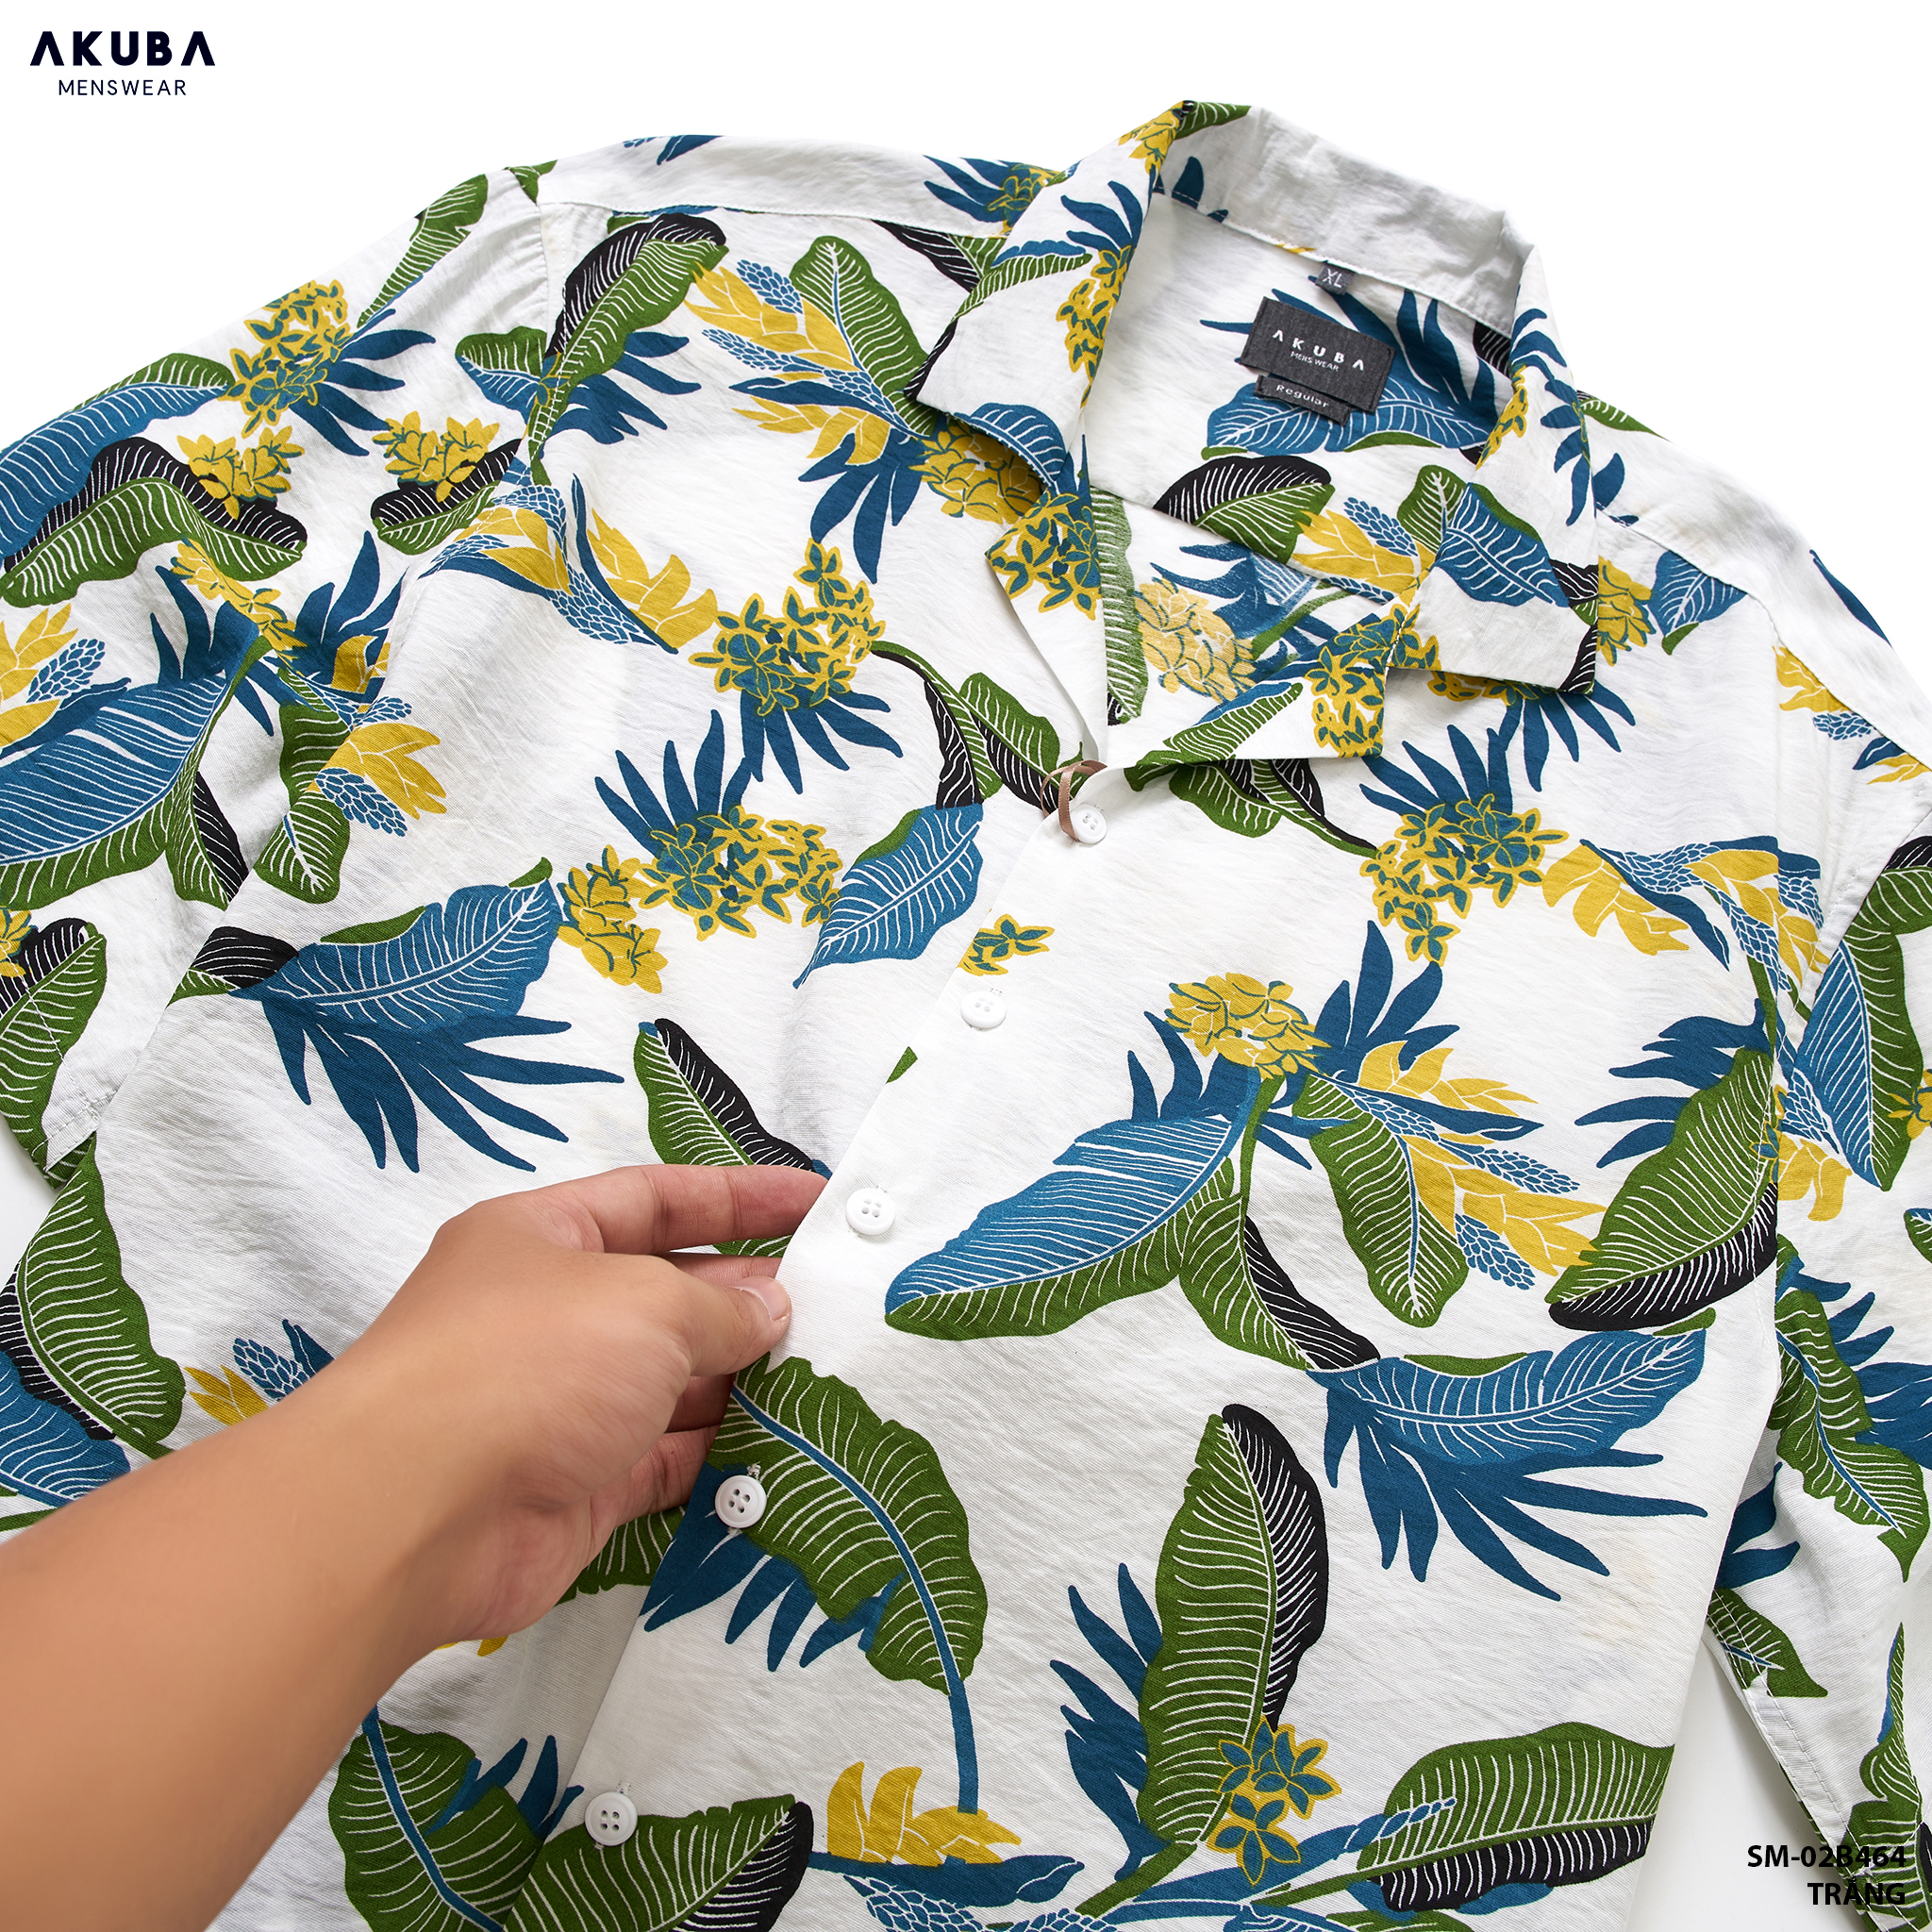 Áo sơ mi nam tay ngắn họa tiết hoa AKUBA form regular, chất liệu mango vải nhẹ, mát, thấm hút tốt | 02B464